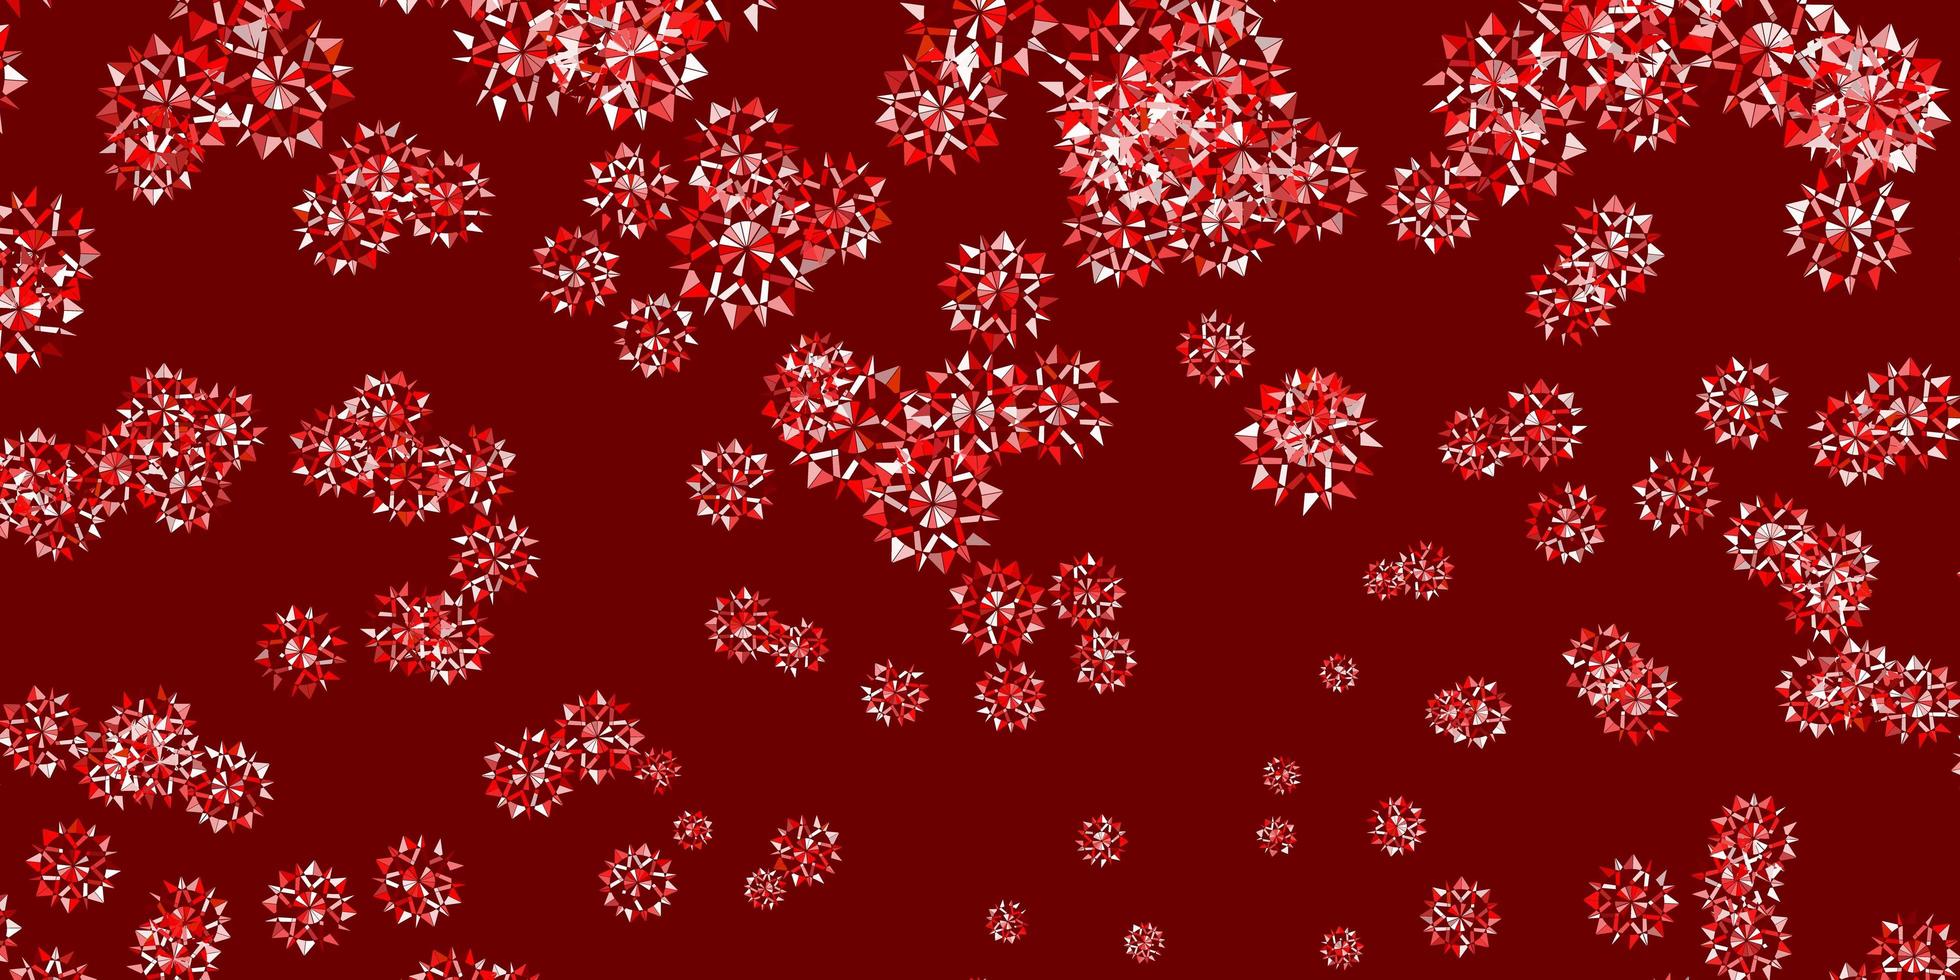 plantilla de vector rojo claro con copos de nieve de hielo.